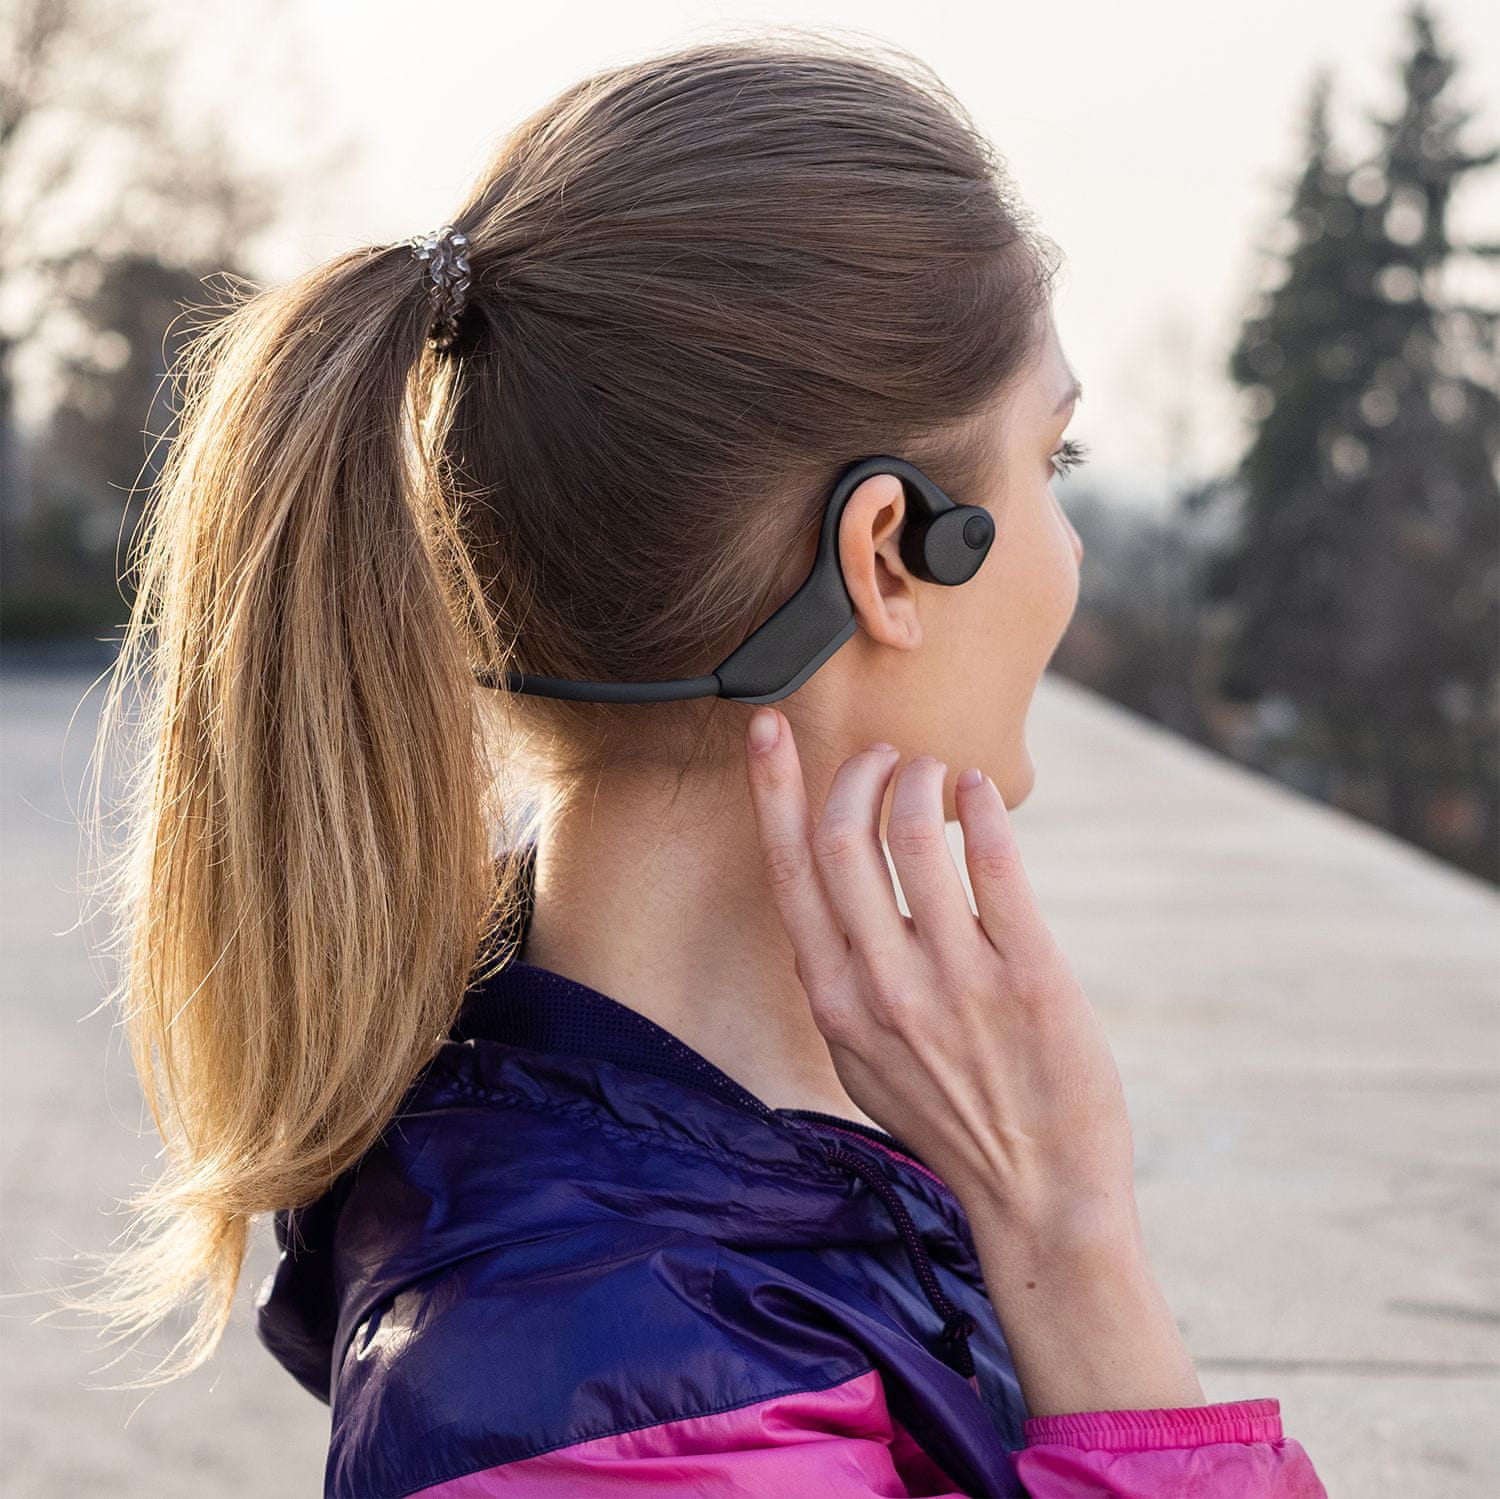  Bluetooth 5.0 sluchátka sportovní niceboy hive bones 2 výborný zvuk lehounká chráněná proti vodě ip55 vhodná pro sportování výdrž 8 h na nabití aac kodek a2dp profil 